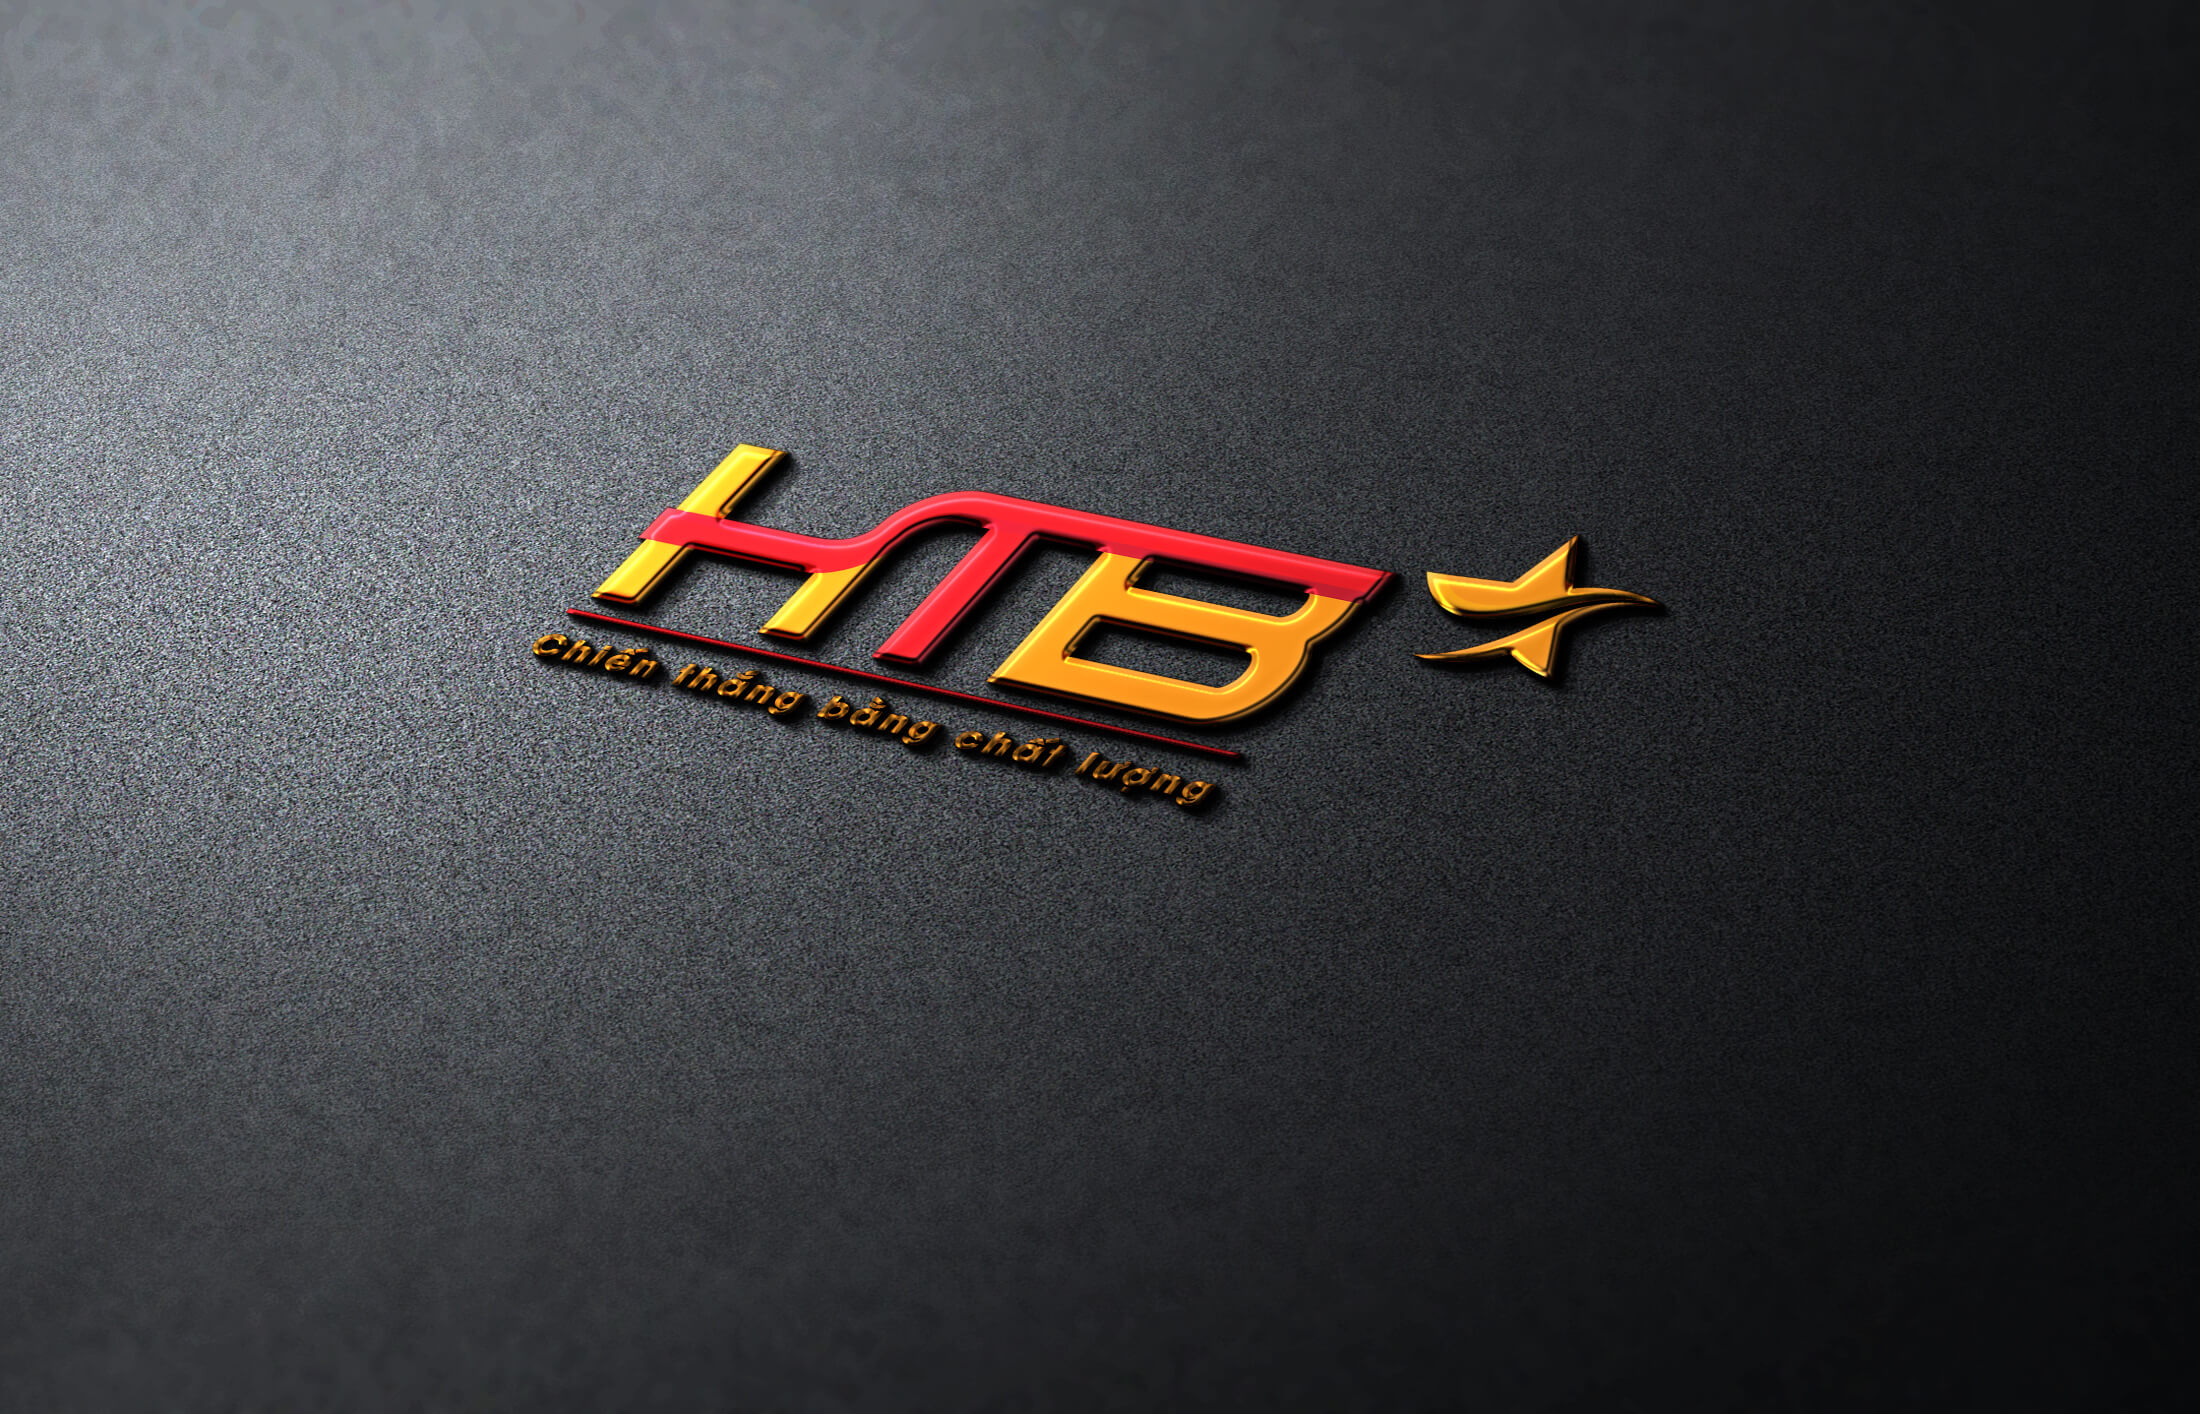 Thiết kế logo công ty cổ phần HTB Việt Nam tại Hà Nội